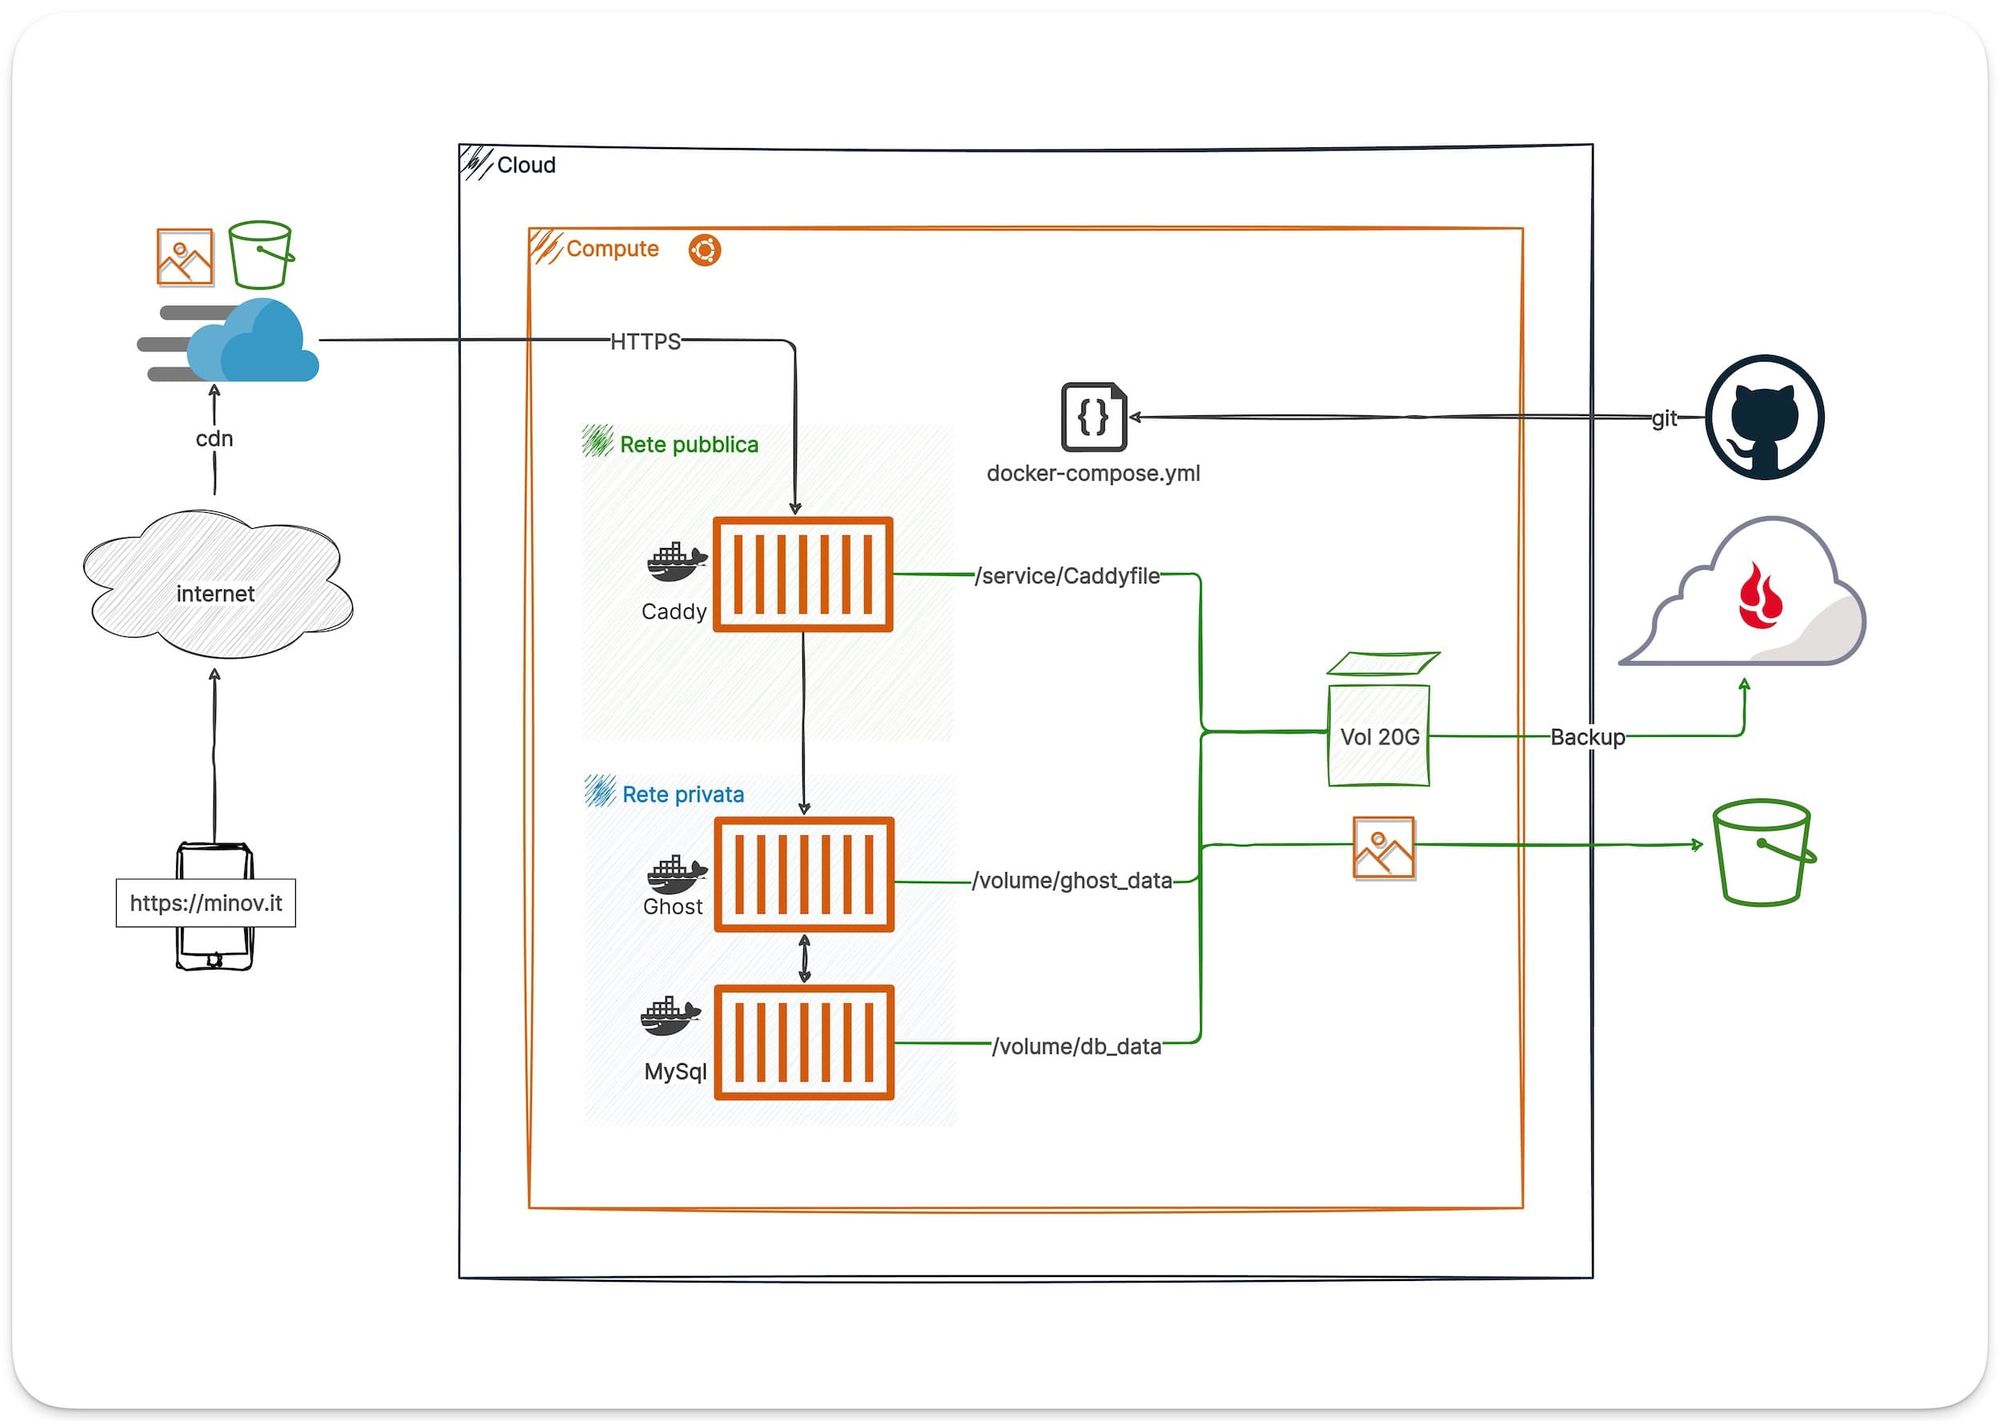 Diagramma di architettura cloud con Caddy, Ghost, MySQL, e backup.